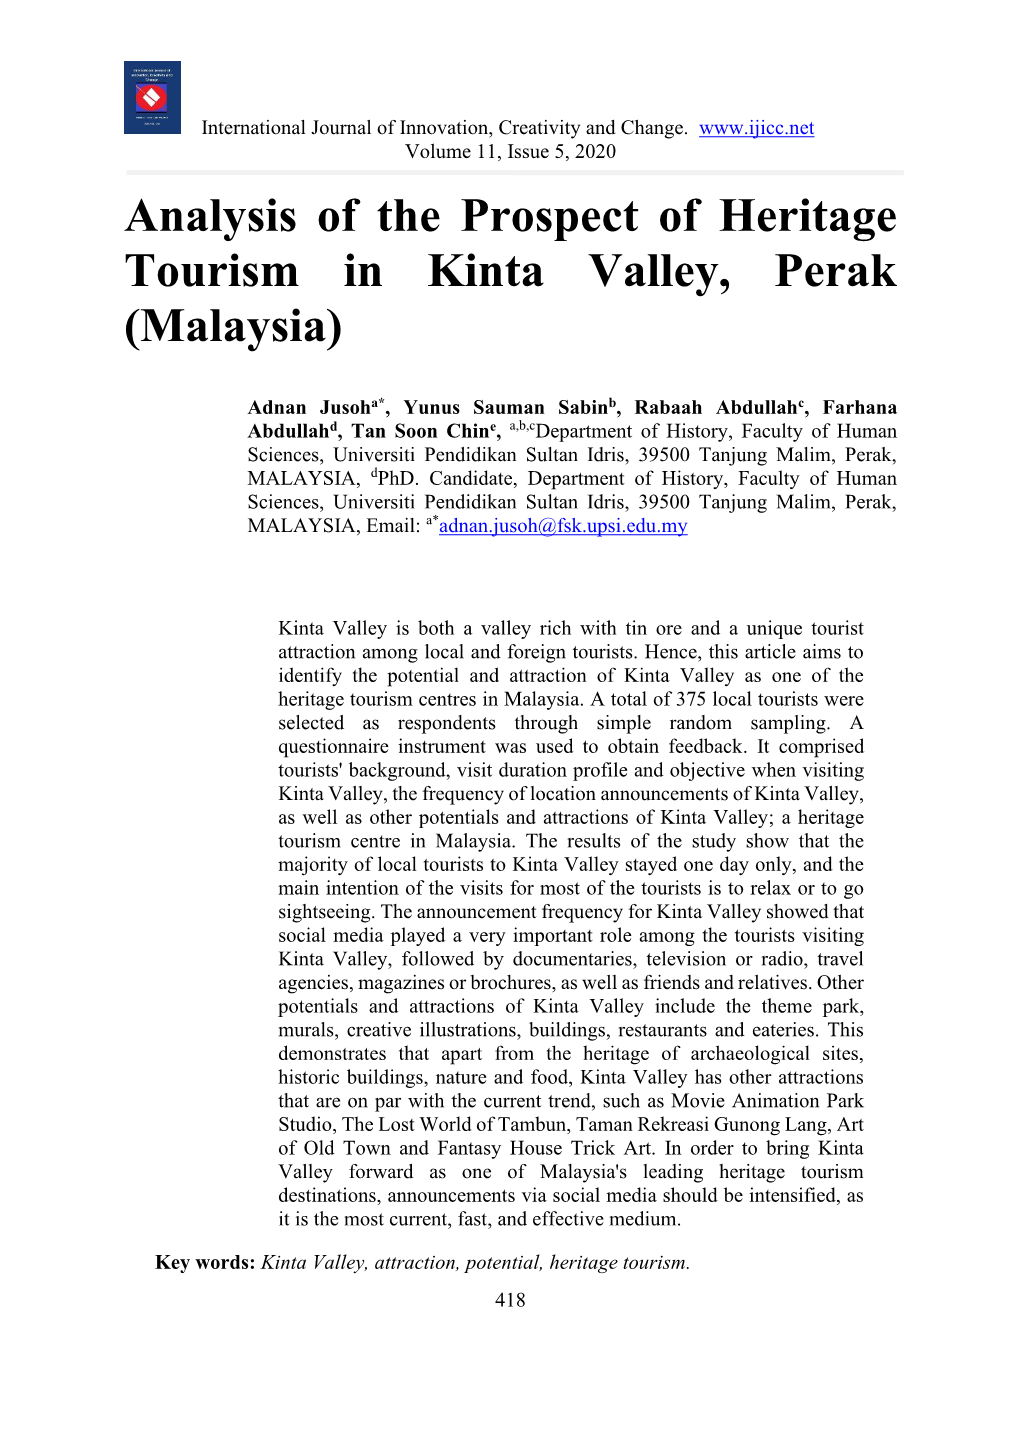 Analysis of the Prospect of Heritage Tourism in Kinta Valley, Perak (Malaysia)